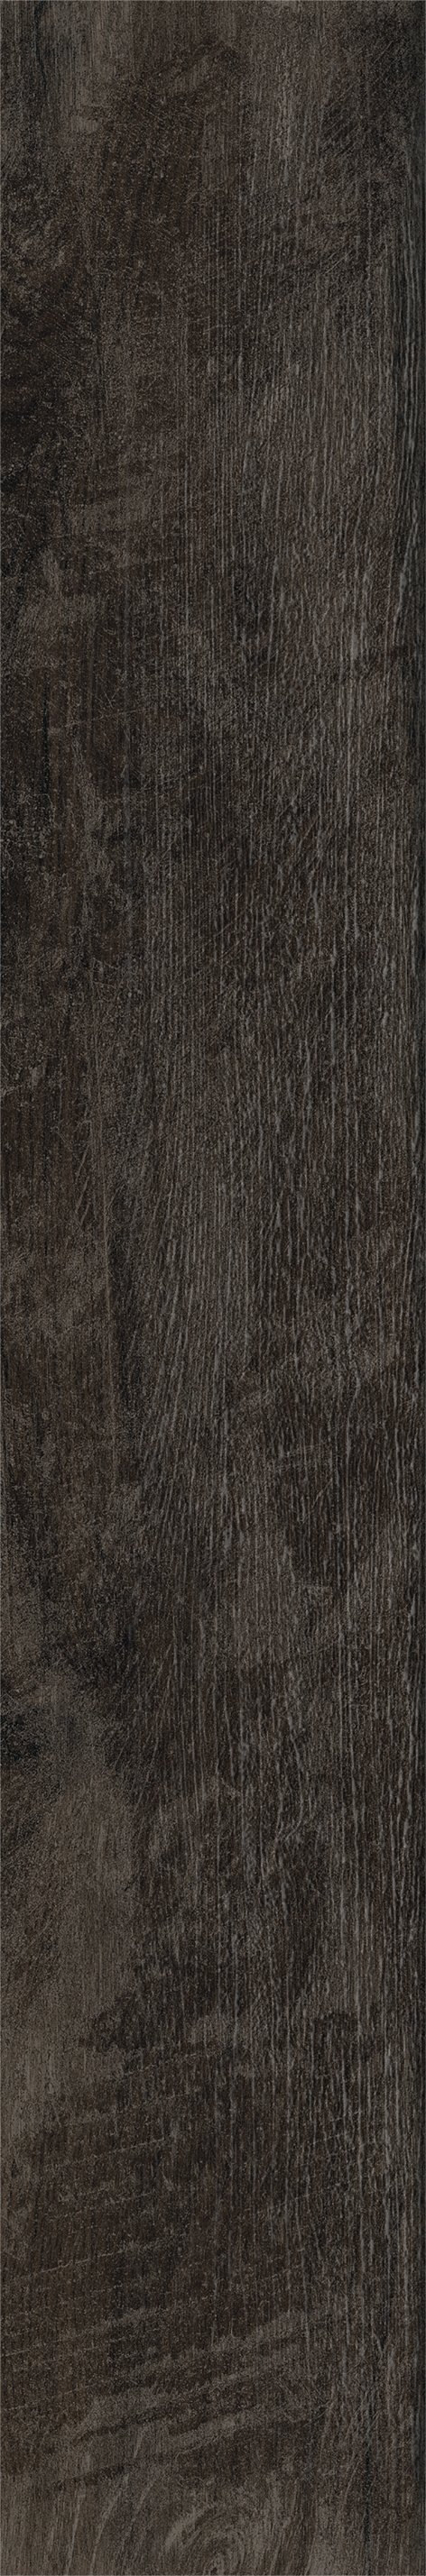 Плитка из керамогранита матовая Italon Грув 20x120 коричневый (610010001884) плитка из керамогранита матовая italon элемент вуд 20x120 бежевый 610010001088